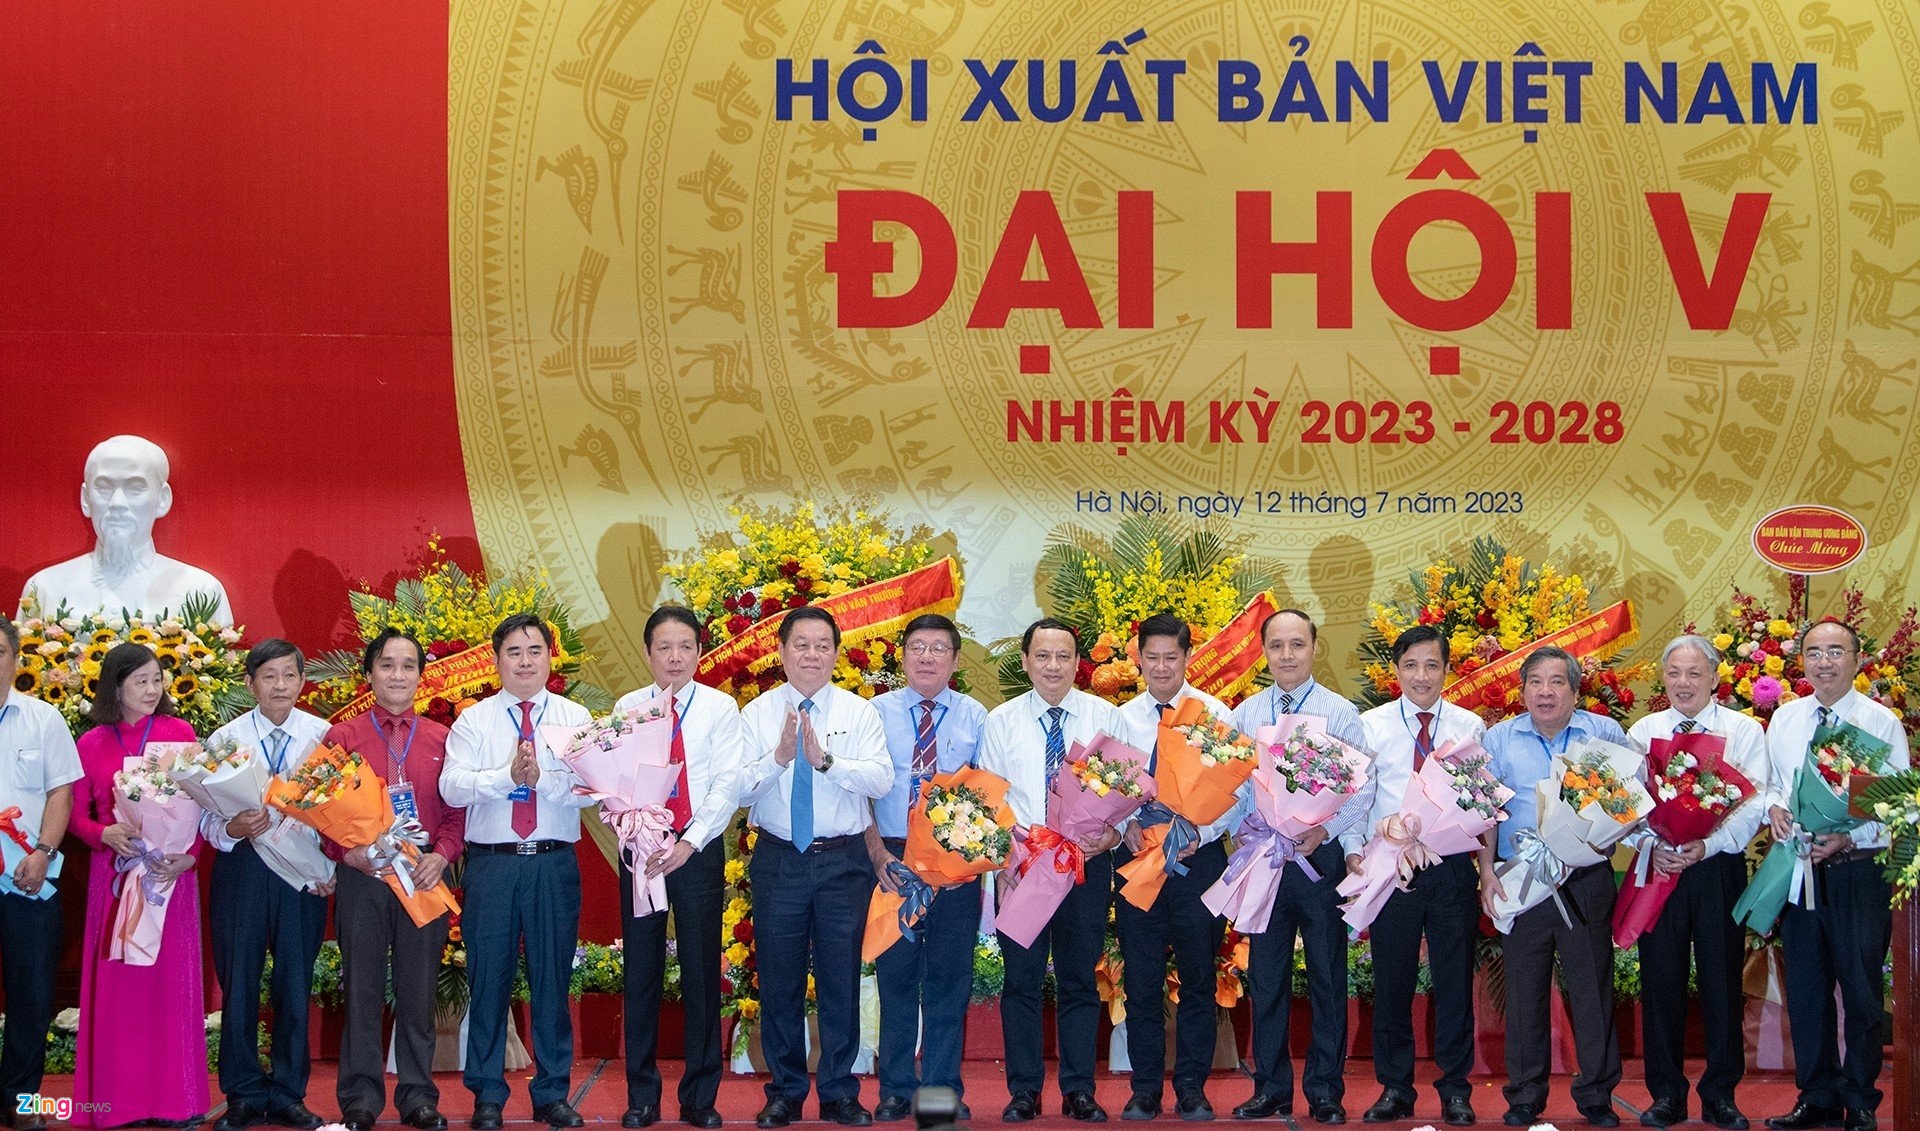 Ông Phạm Minh Tuấn là chủ tịch Hội Xuất bản Việt Nam khóa V Phạm Minh Tuấn 2023-2028 - Ảnh 2.